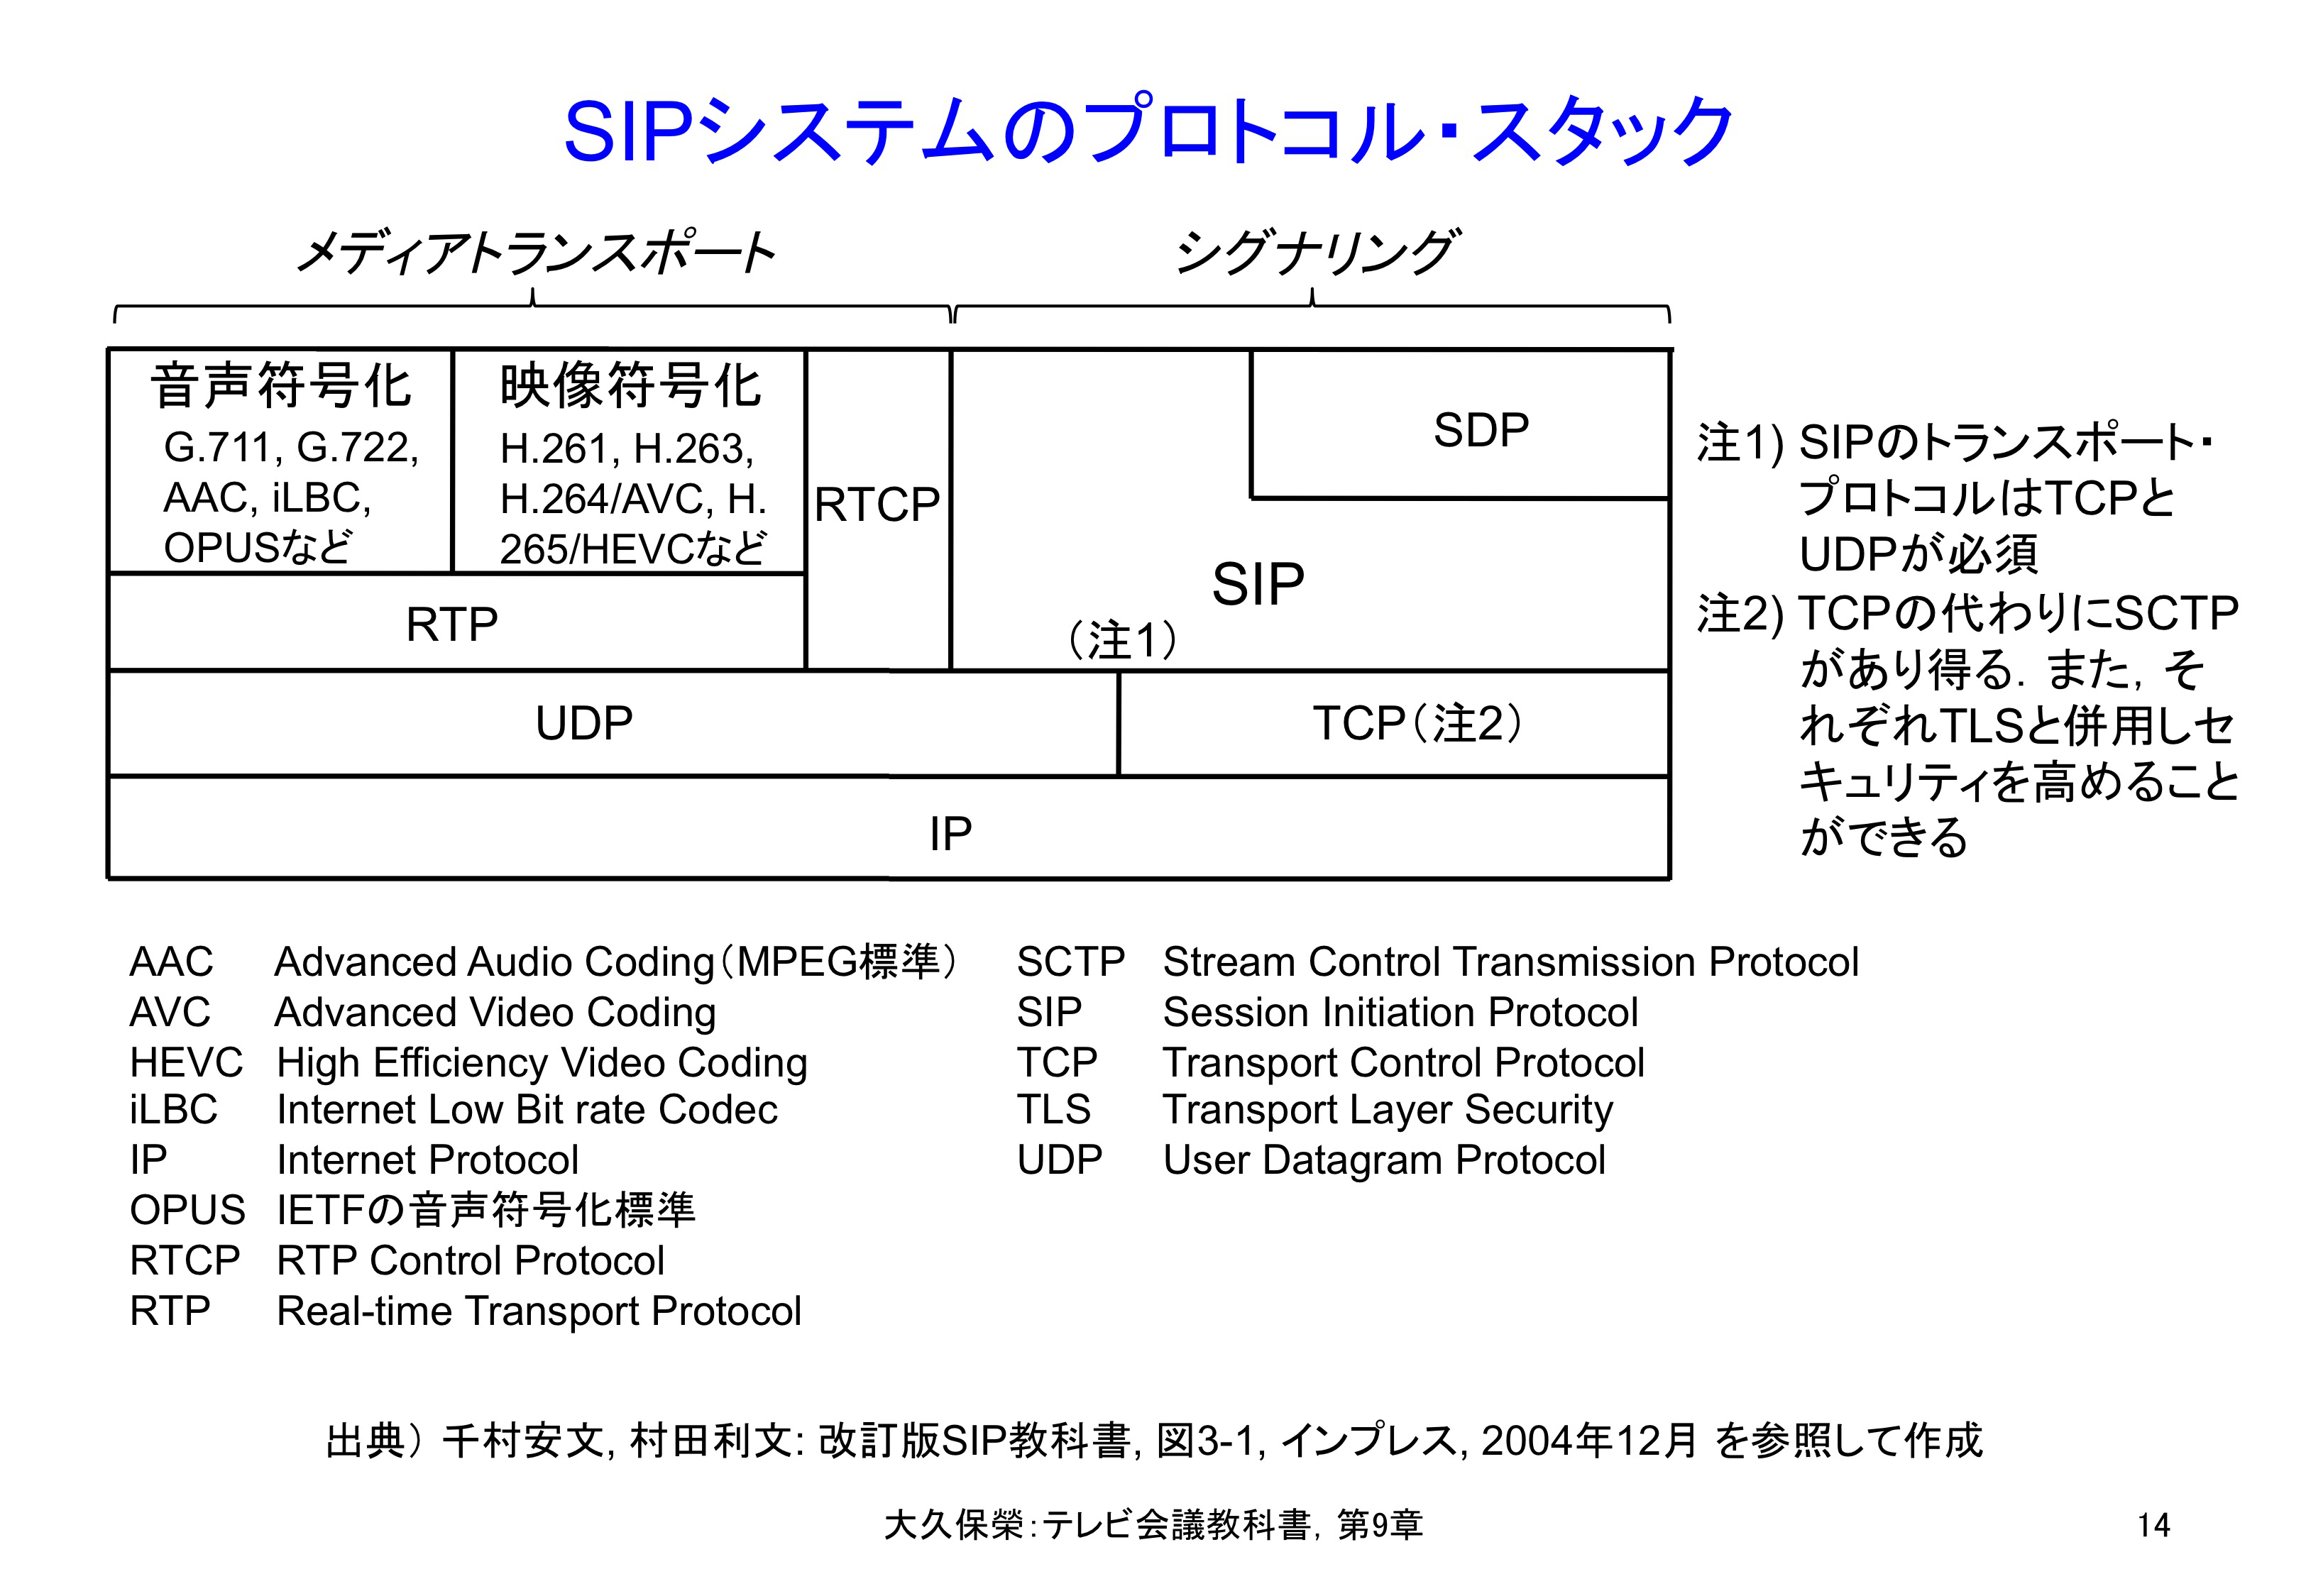 図9-14 SIPシステムのプロトコル・スタック